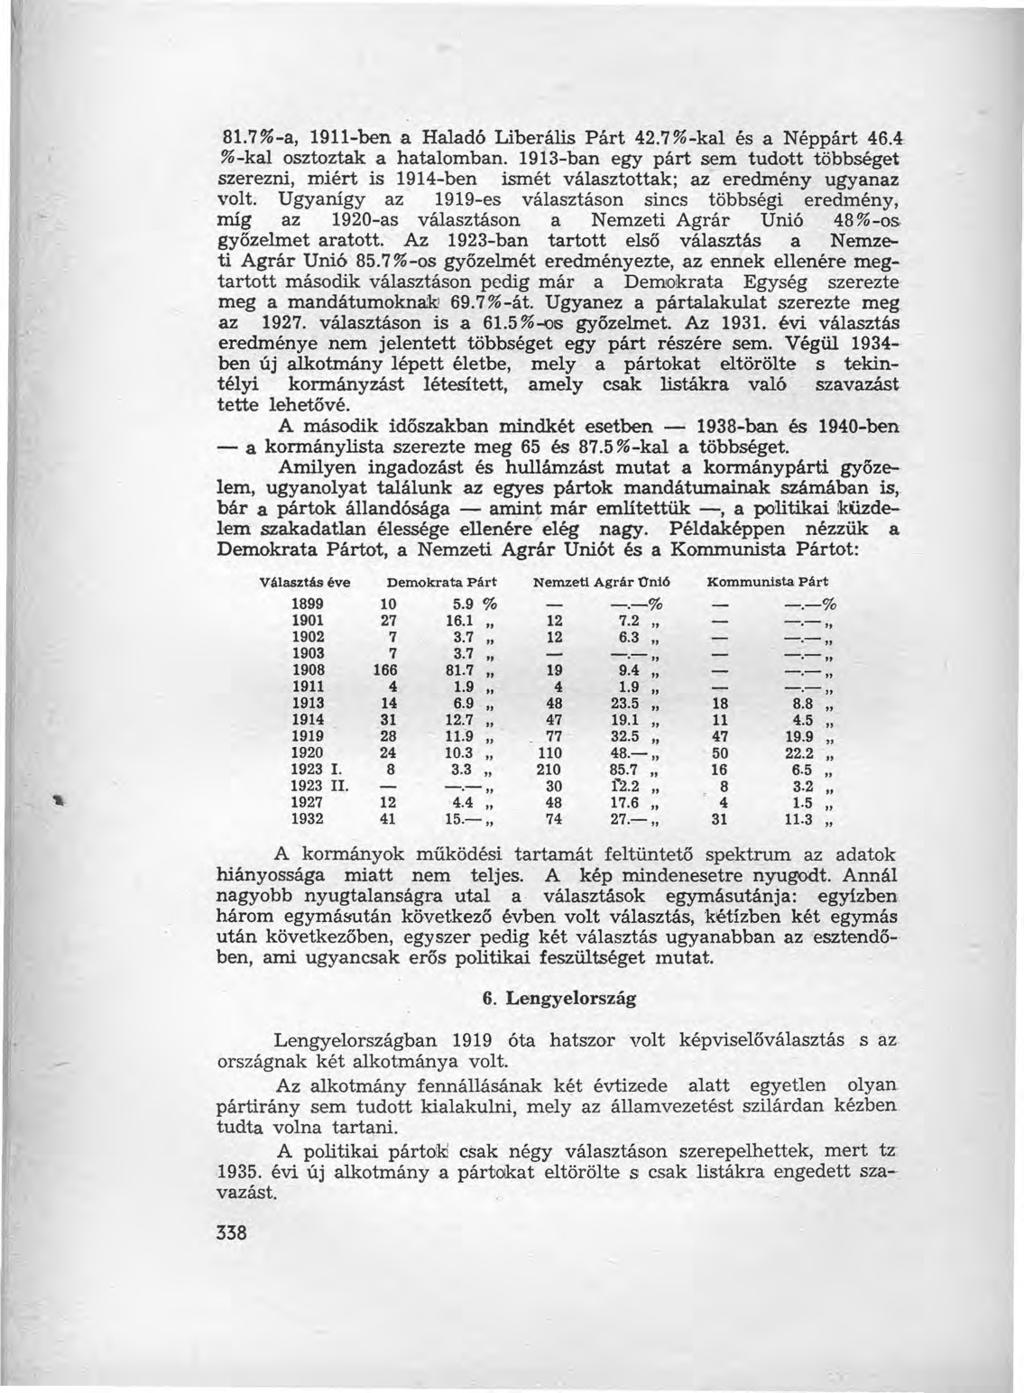 81.7%-a, 1911-ben a Haladó Liberálls Párt 42.7%-kal és a Néppárt 46.4 %-kal osztoztak a hatalomban.